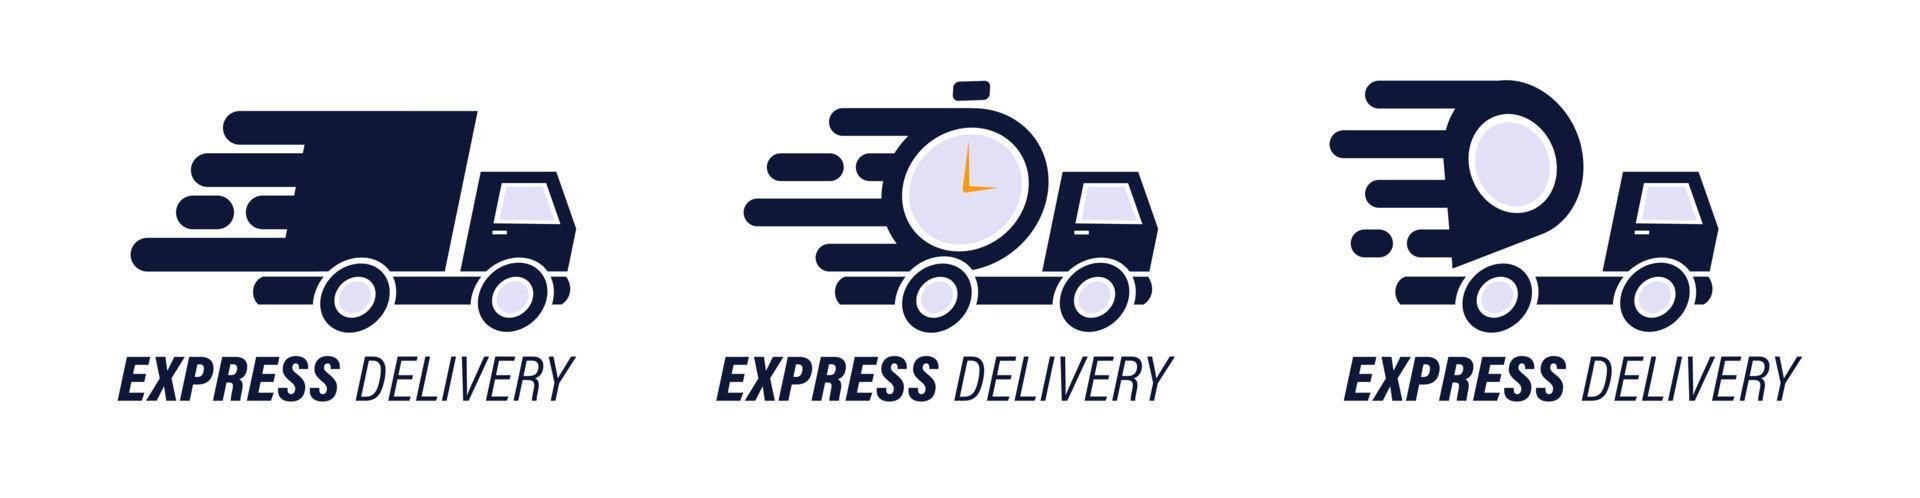 vrachtwagen met stopwatch-expresbezorgingspictogram voor service, bestelling, snelle, gratis en wereldwijde verzending. vector